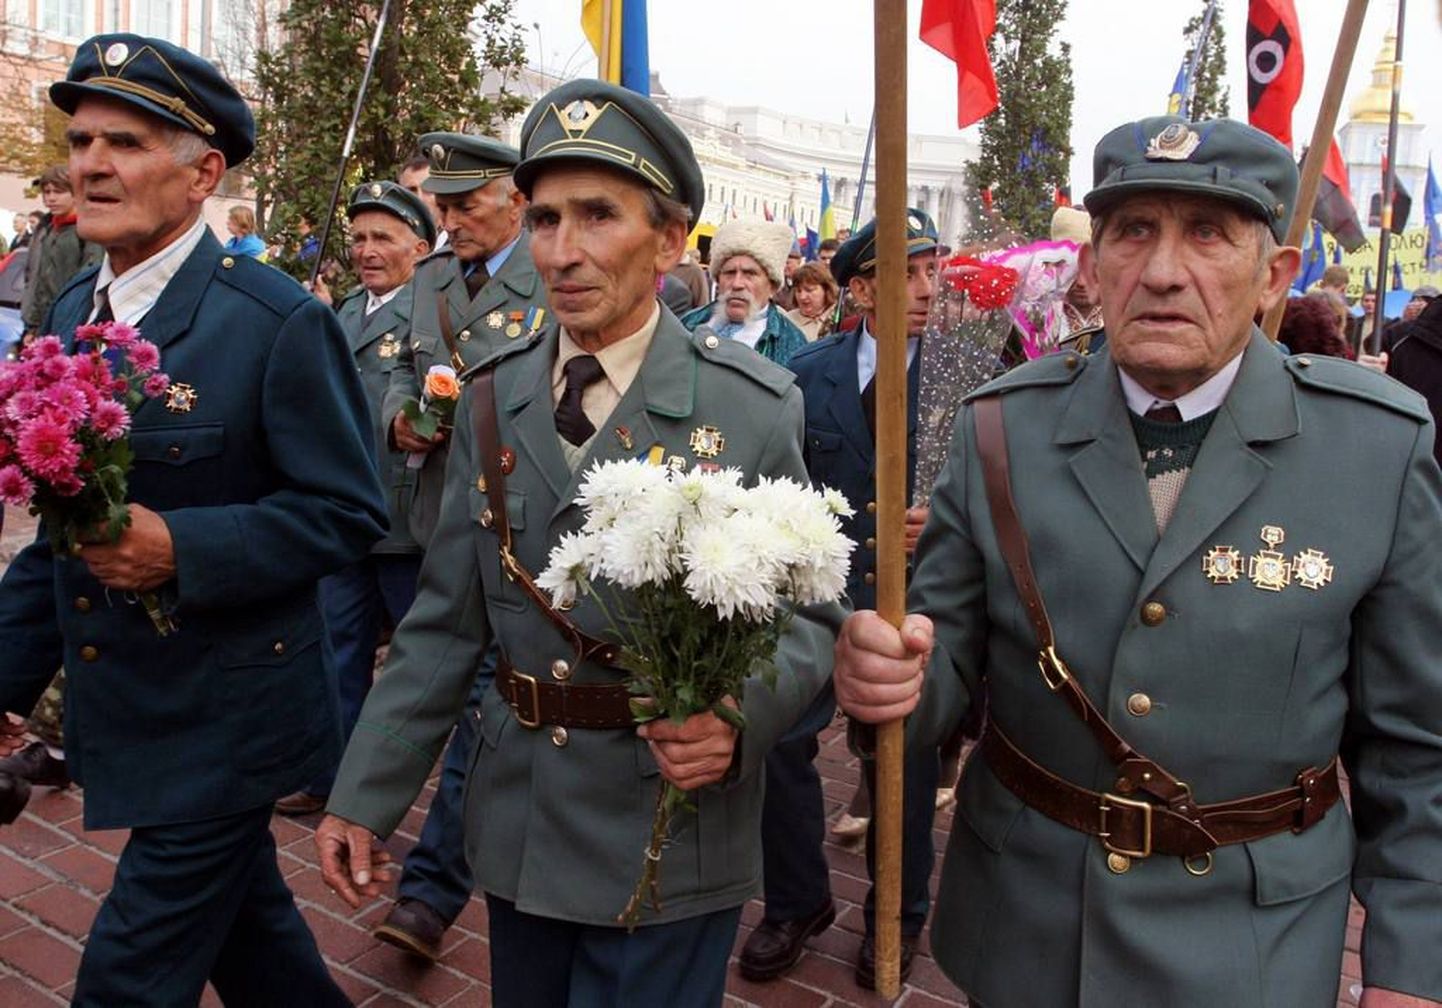 Марш по центру Киева в ознаменование годовщины создания УПА в 2013 году.